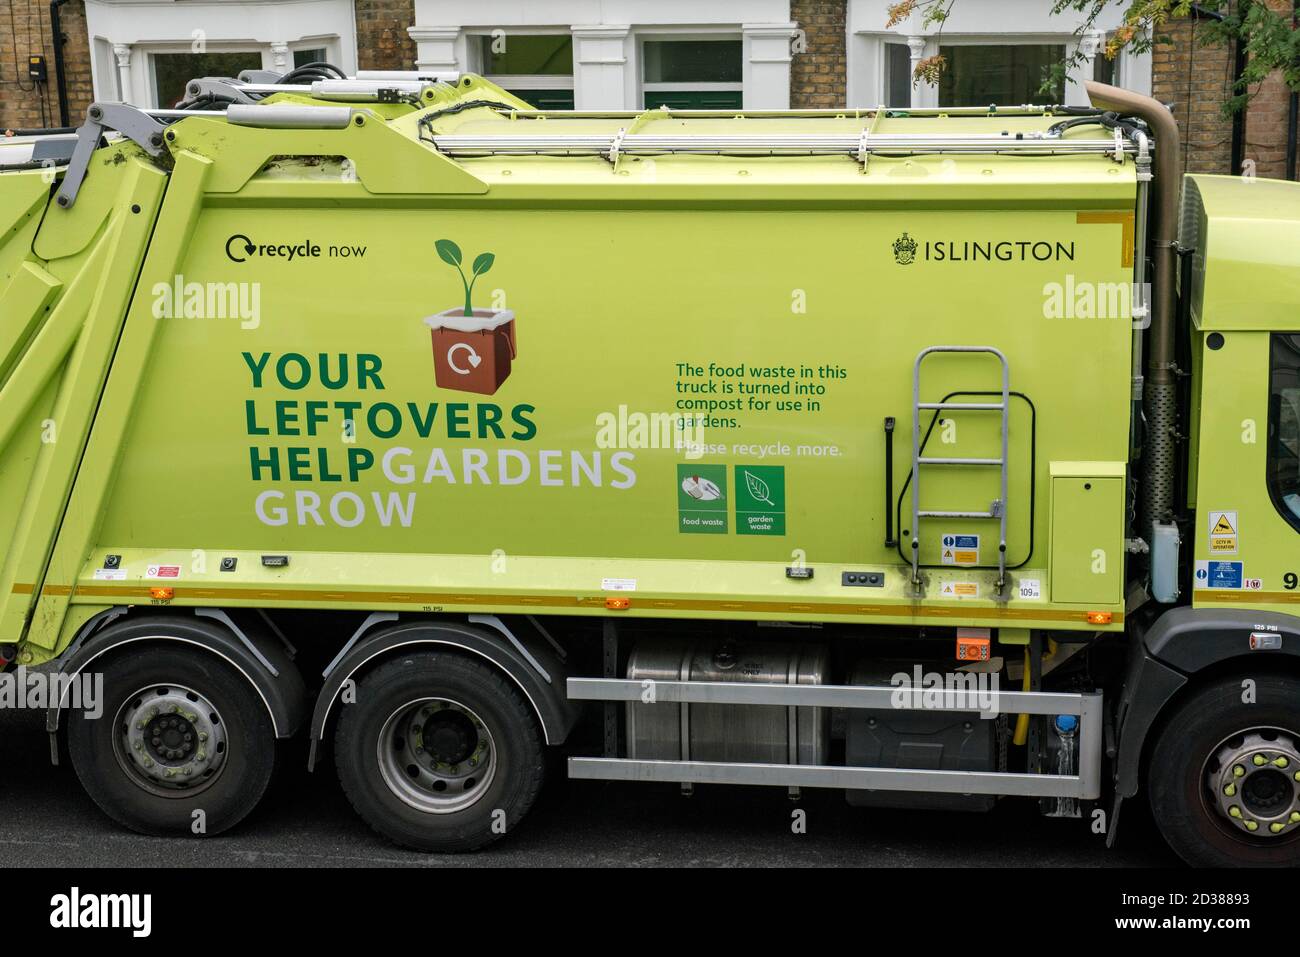 Riciclaggio del carrello con slogan sul lato che incoraggia le persone a riciclare Cibo e rifiuti verdi per fare compost - i vostri avanzi Aiutare Giardini crescere - Islington Foto Stock